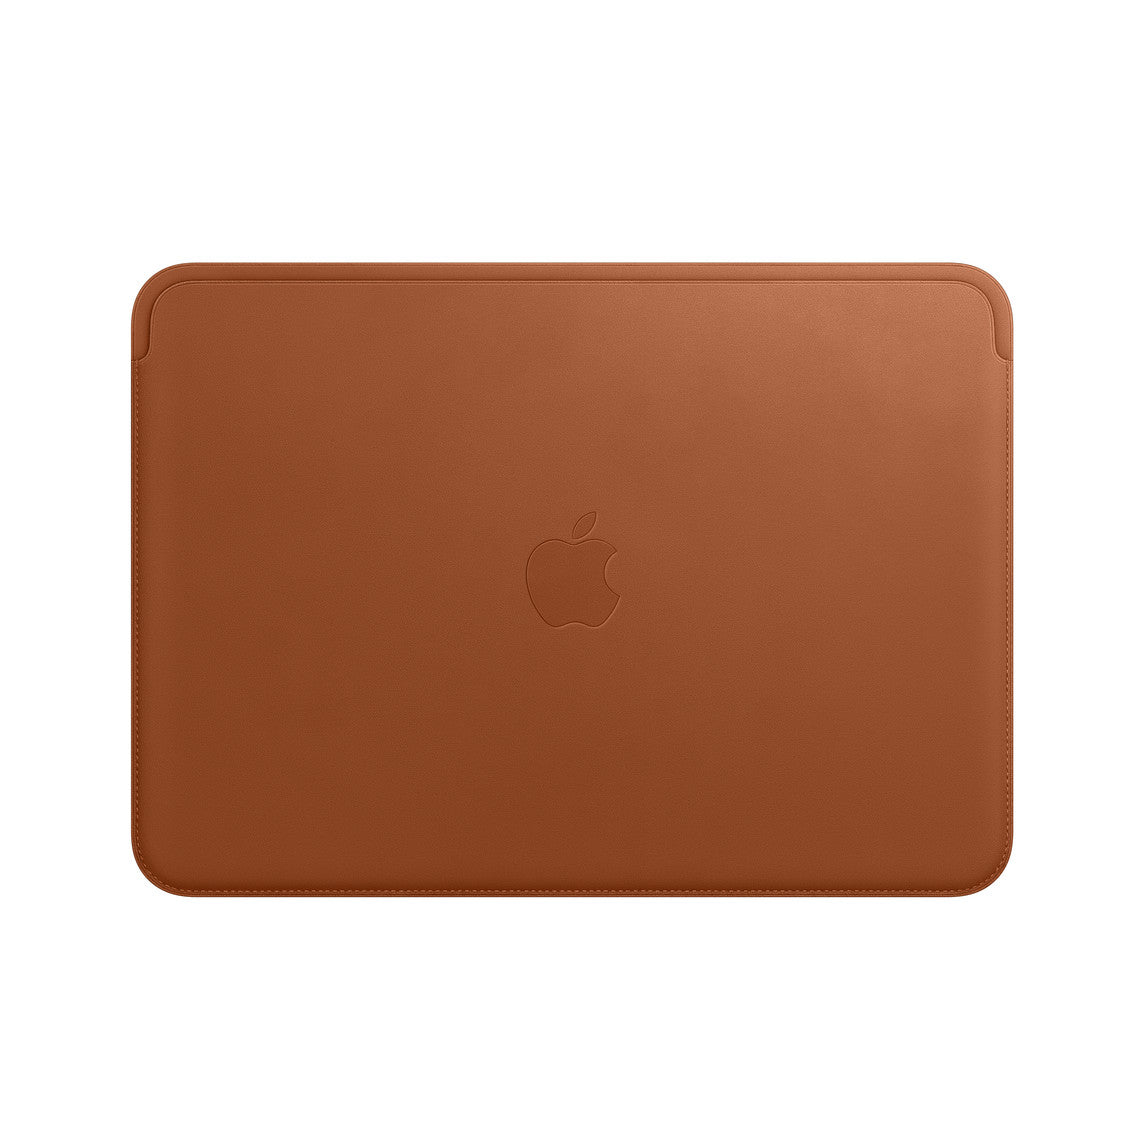 Funda de piel para el MacBook Pro de 15 pulgadas - Marrón caramelo